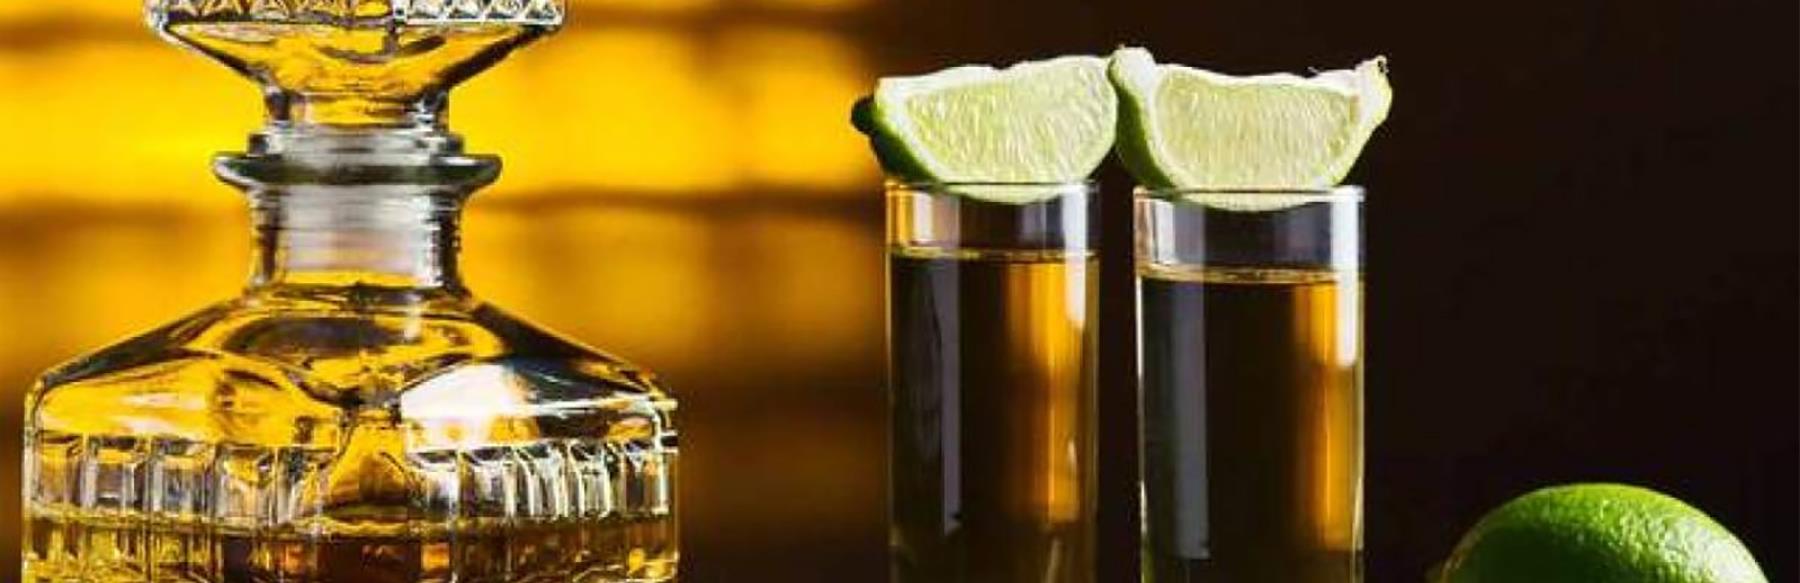 el tequila rompe récords de producción, exportación y consumo en 2020